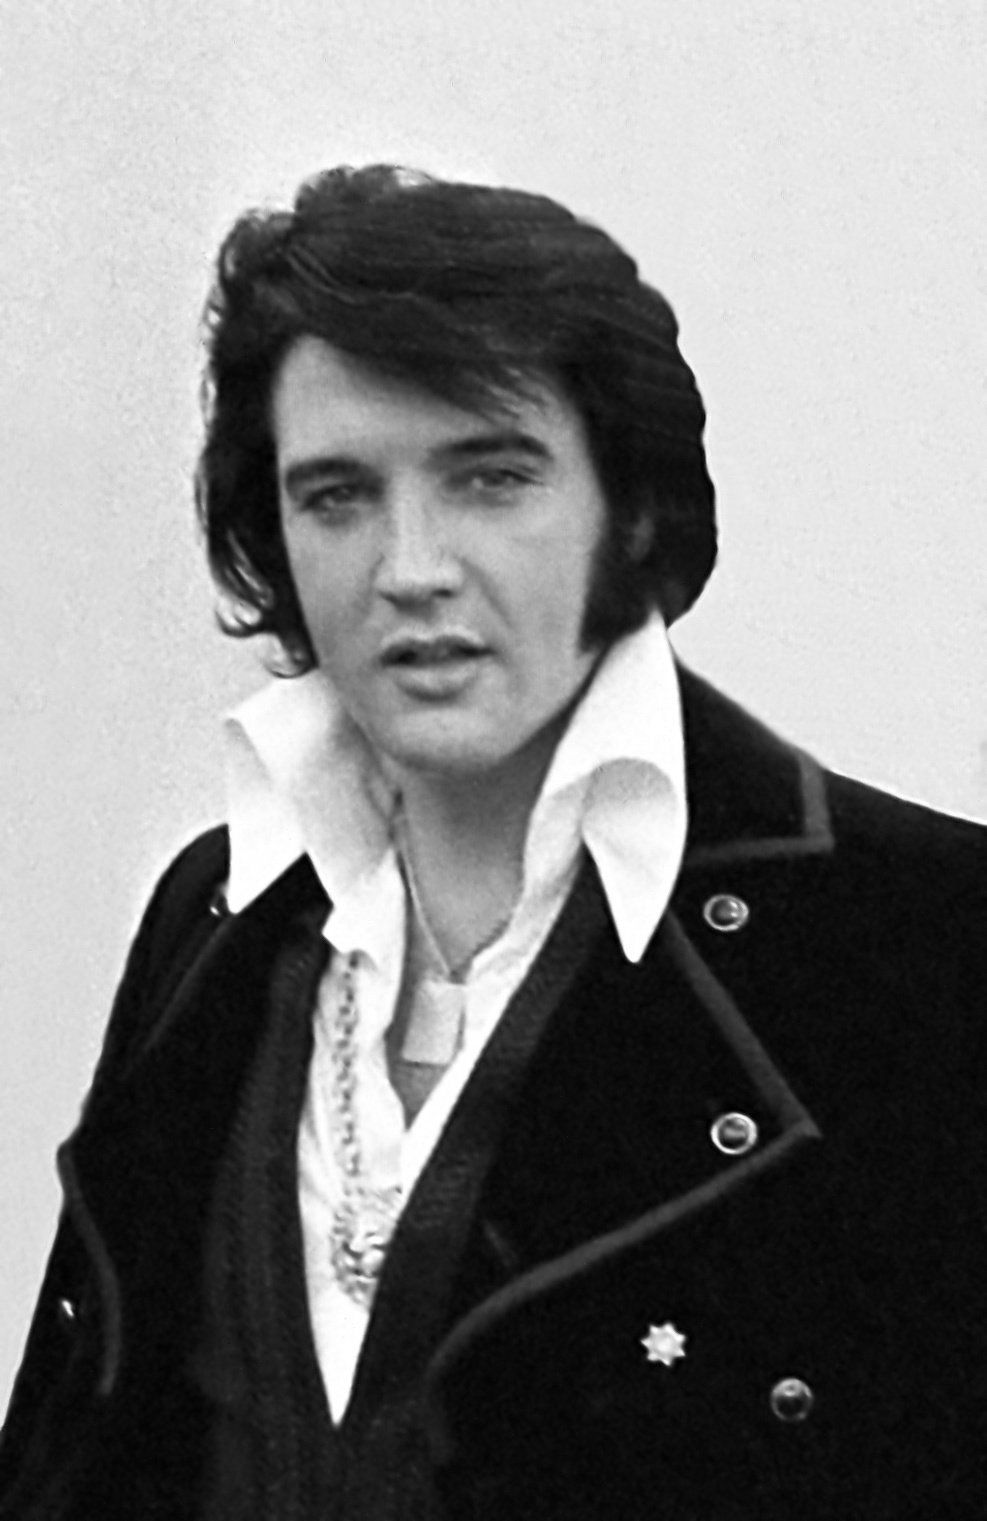 Video von Elvis, der 'Always on My Mind' singt, kombiniert mit seltenem Filmmaterial der Presley-Familie